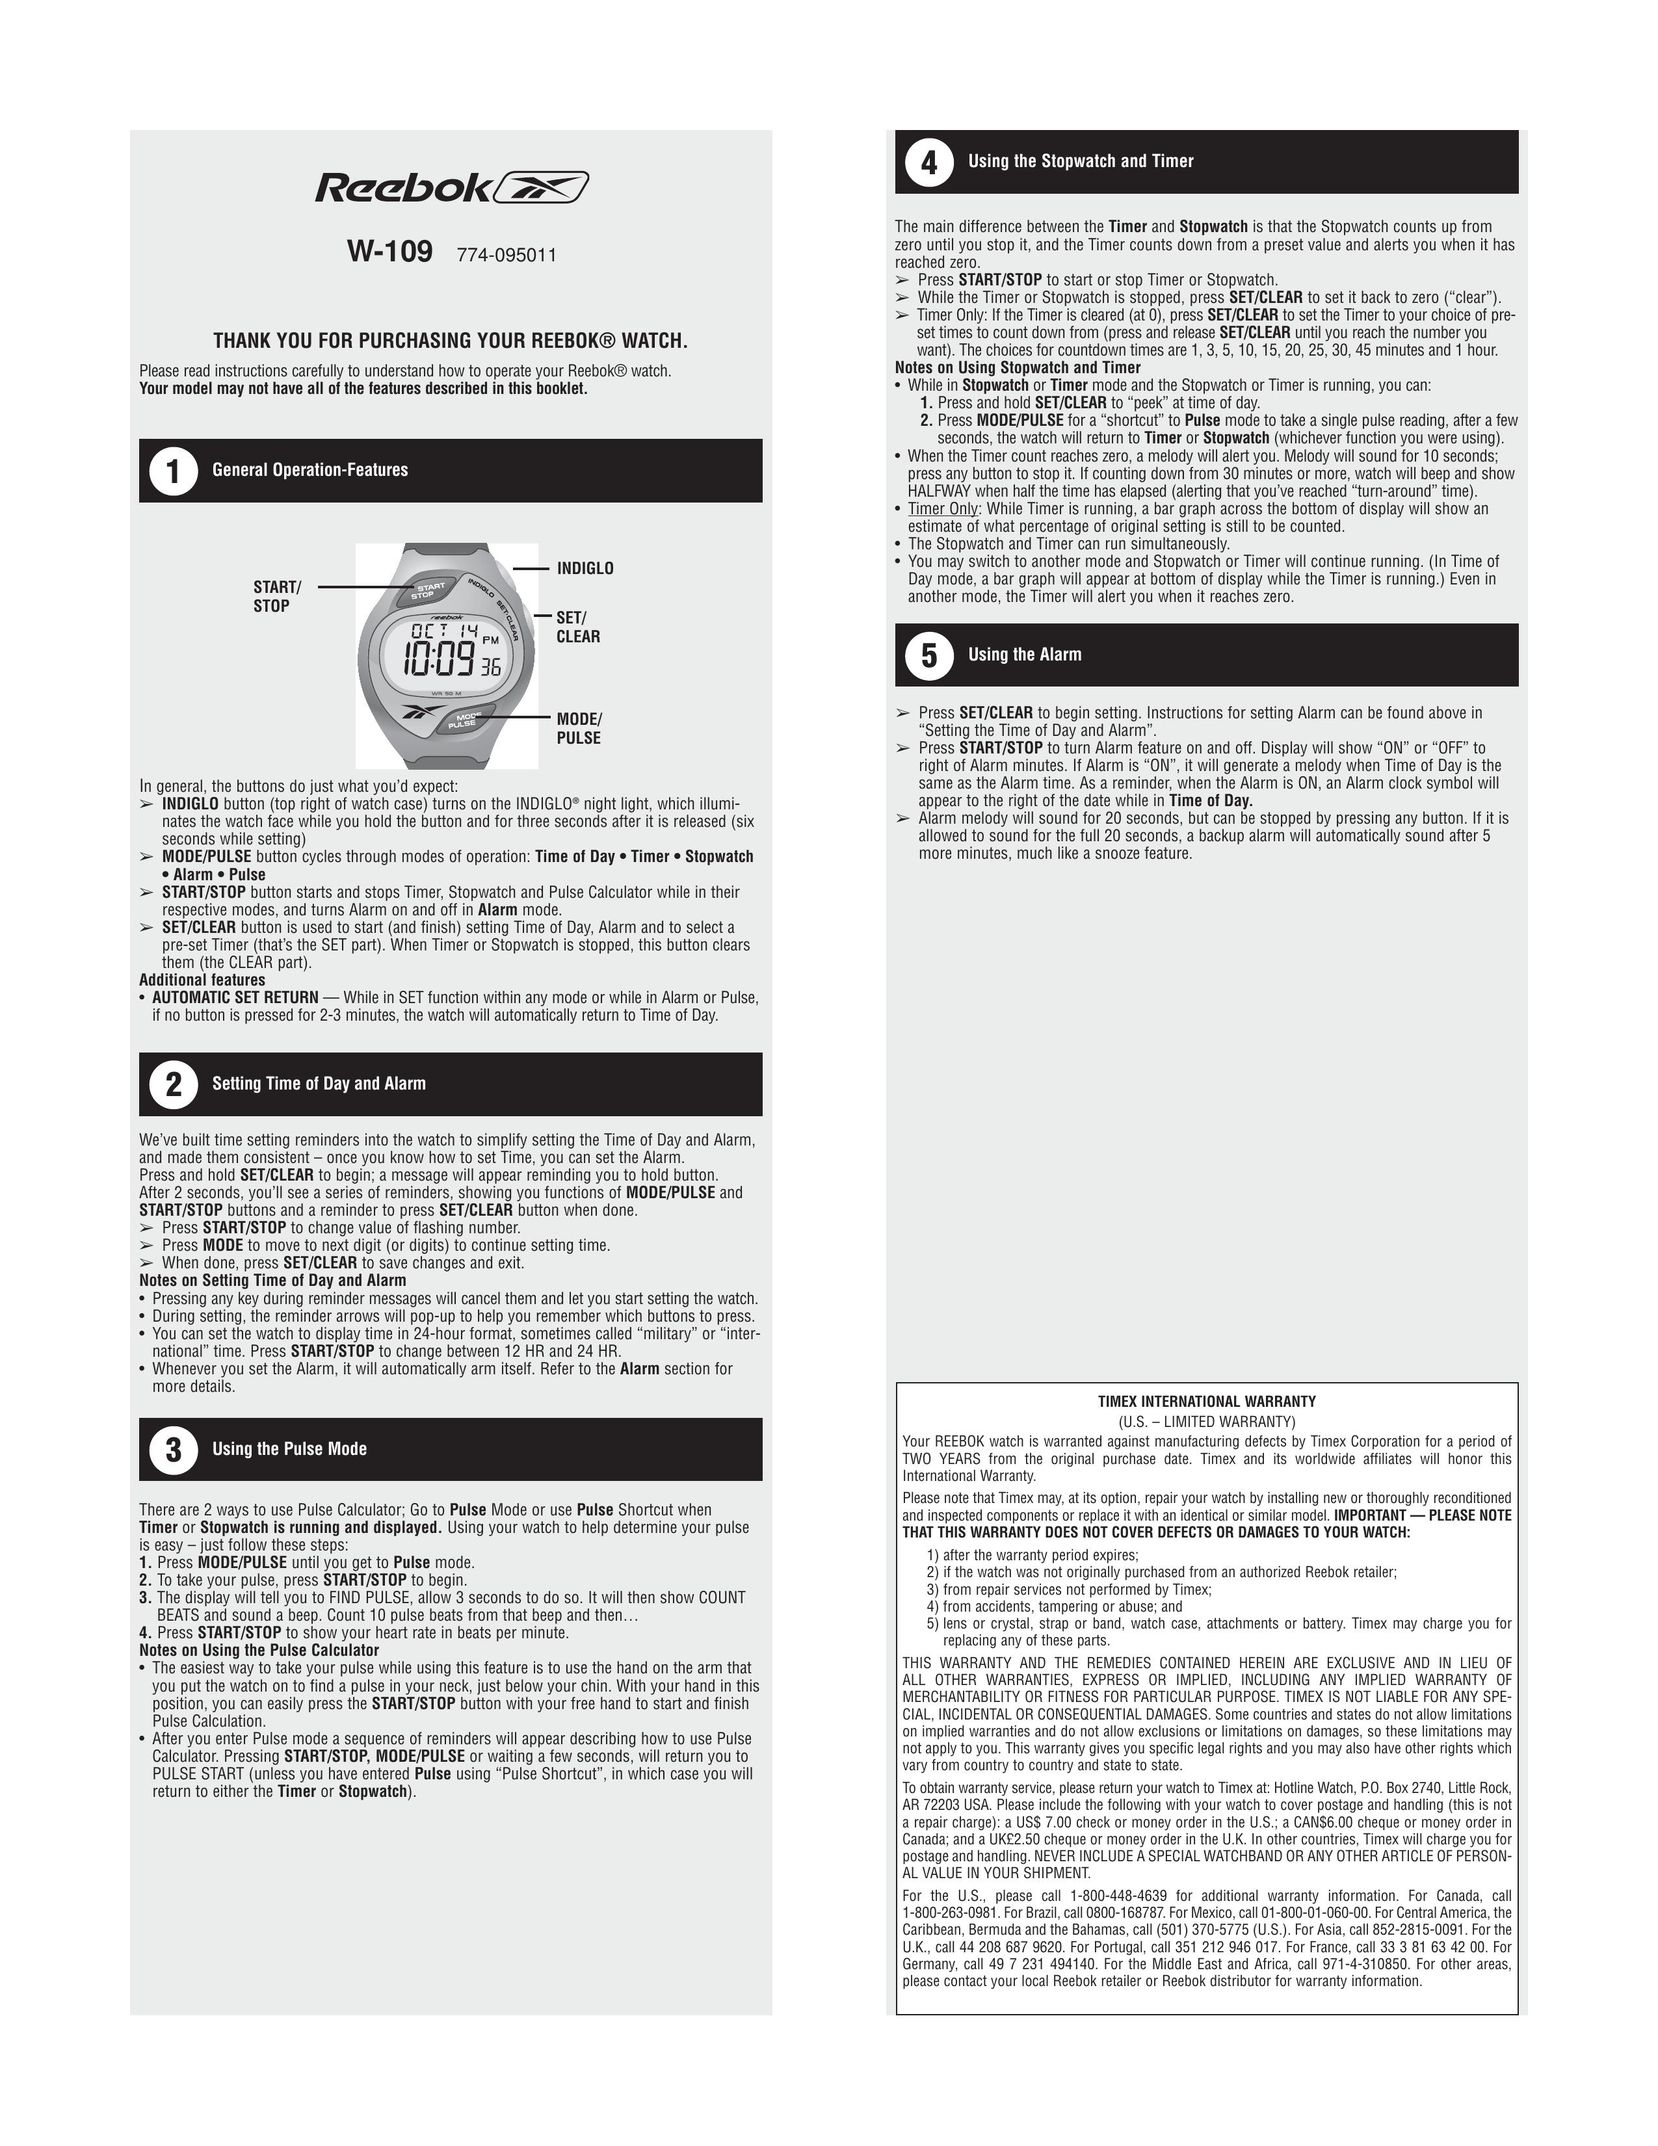 Reebok W-109 Watch User Manual